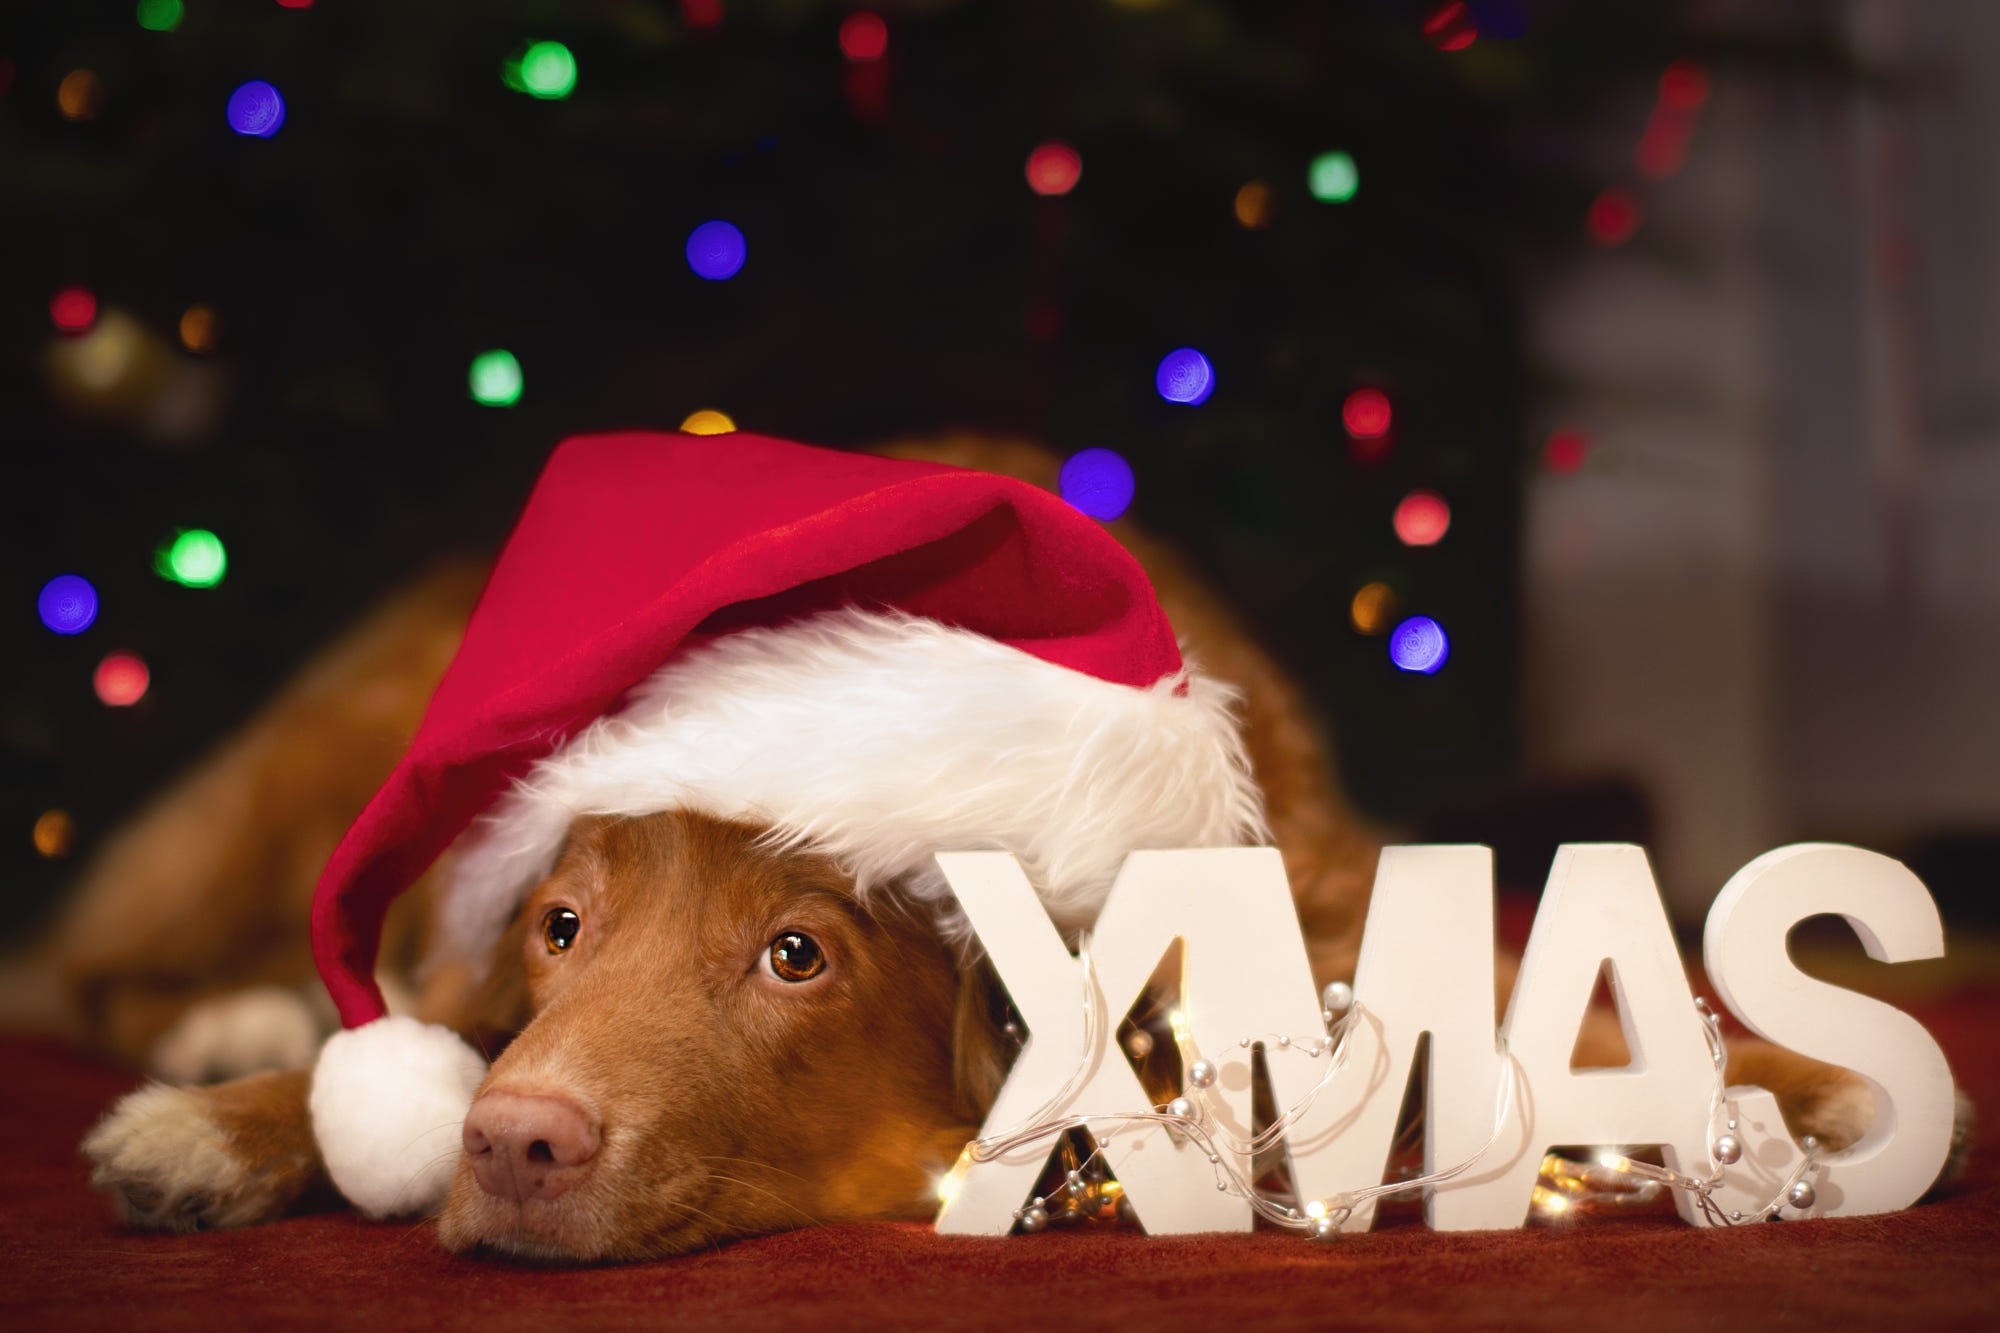 Скачать обои бесплатно Животные, Собаки, Рождество, Лабрадор Ретривер, Шляпа Санты картинка на рабочий стол ПК